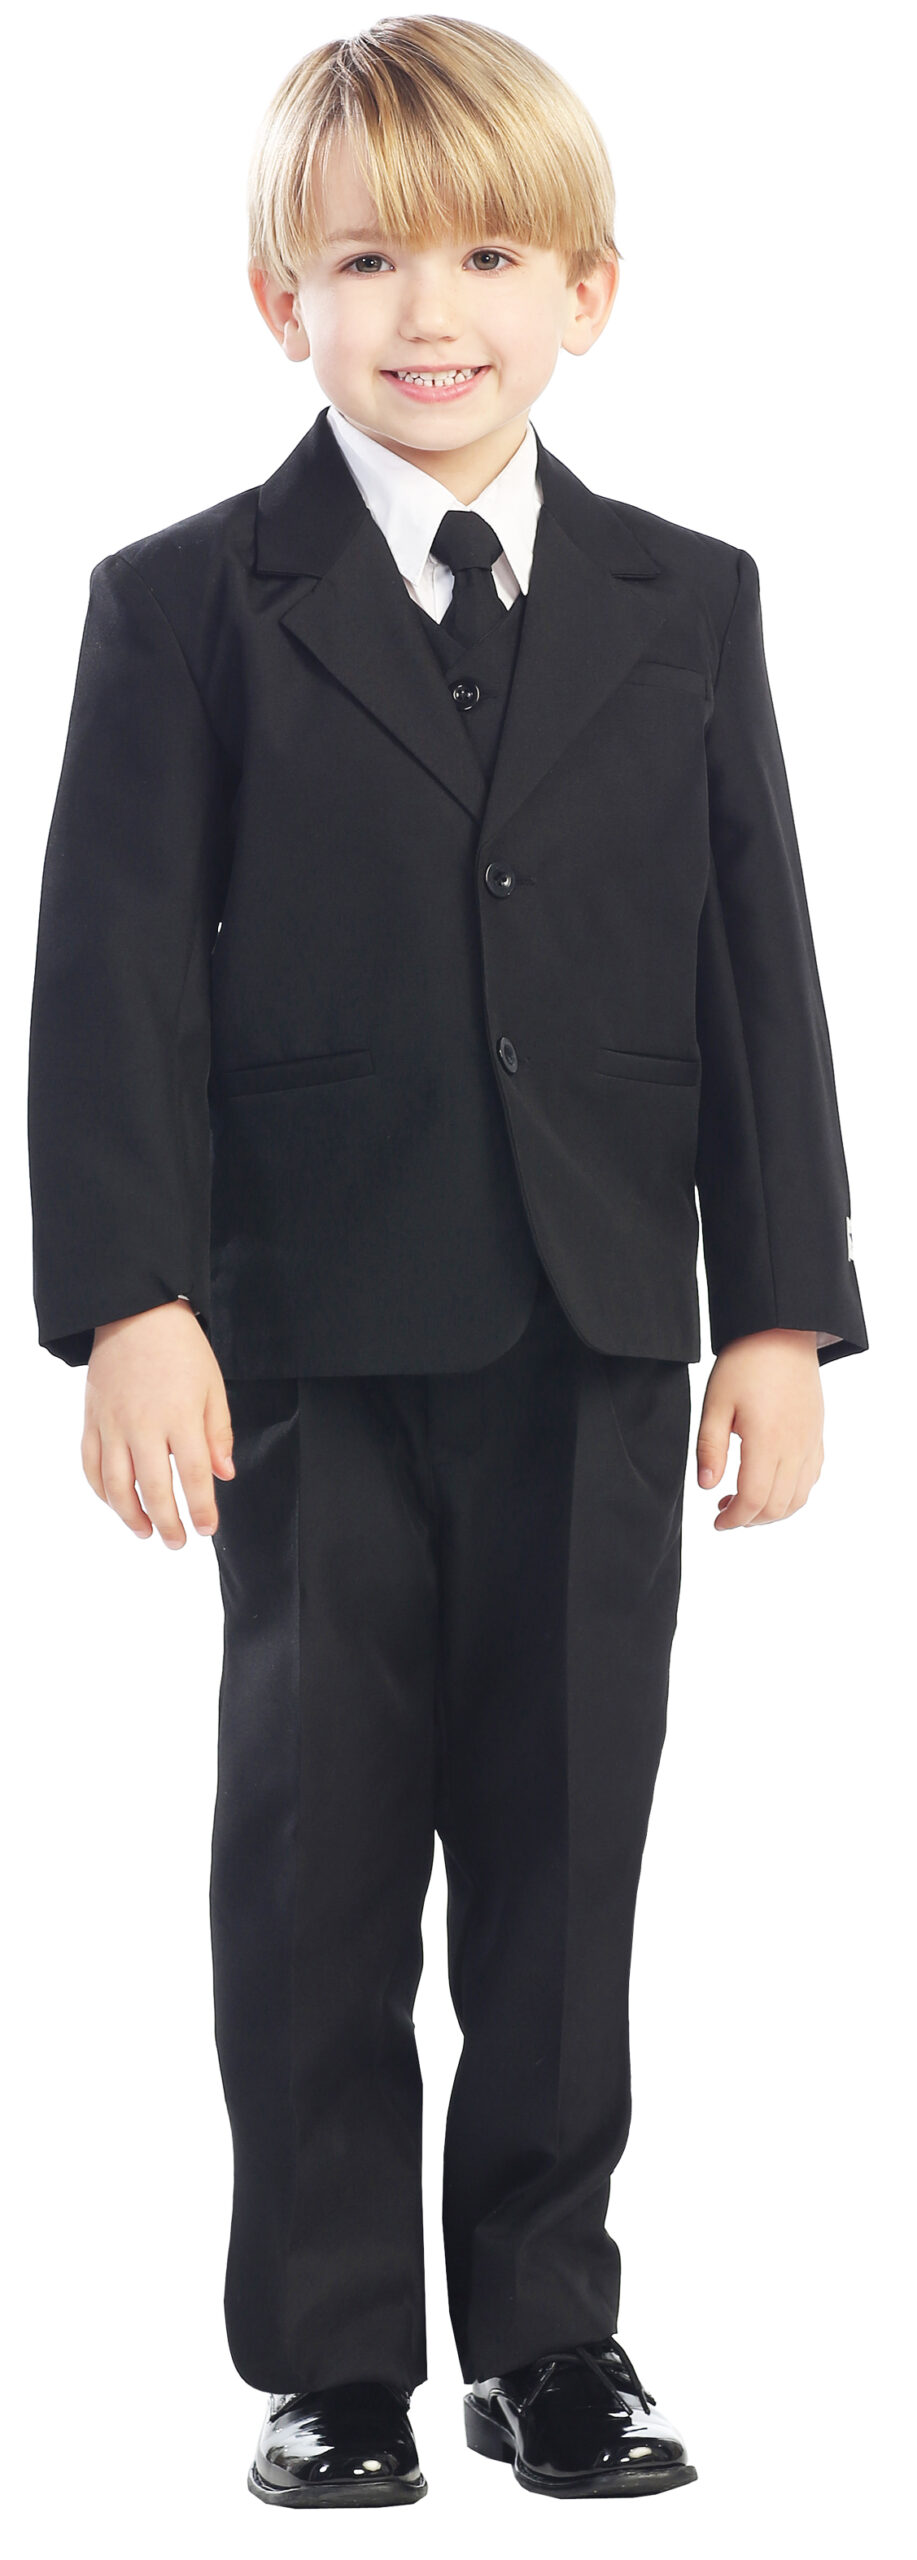 Avery Hill 5-Piece Boy's 2-Button Dress Suit Full-Back Vest - Black Size 2